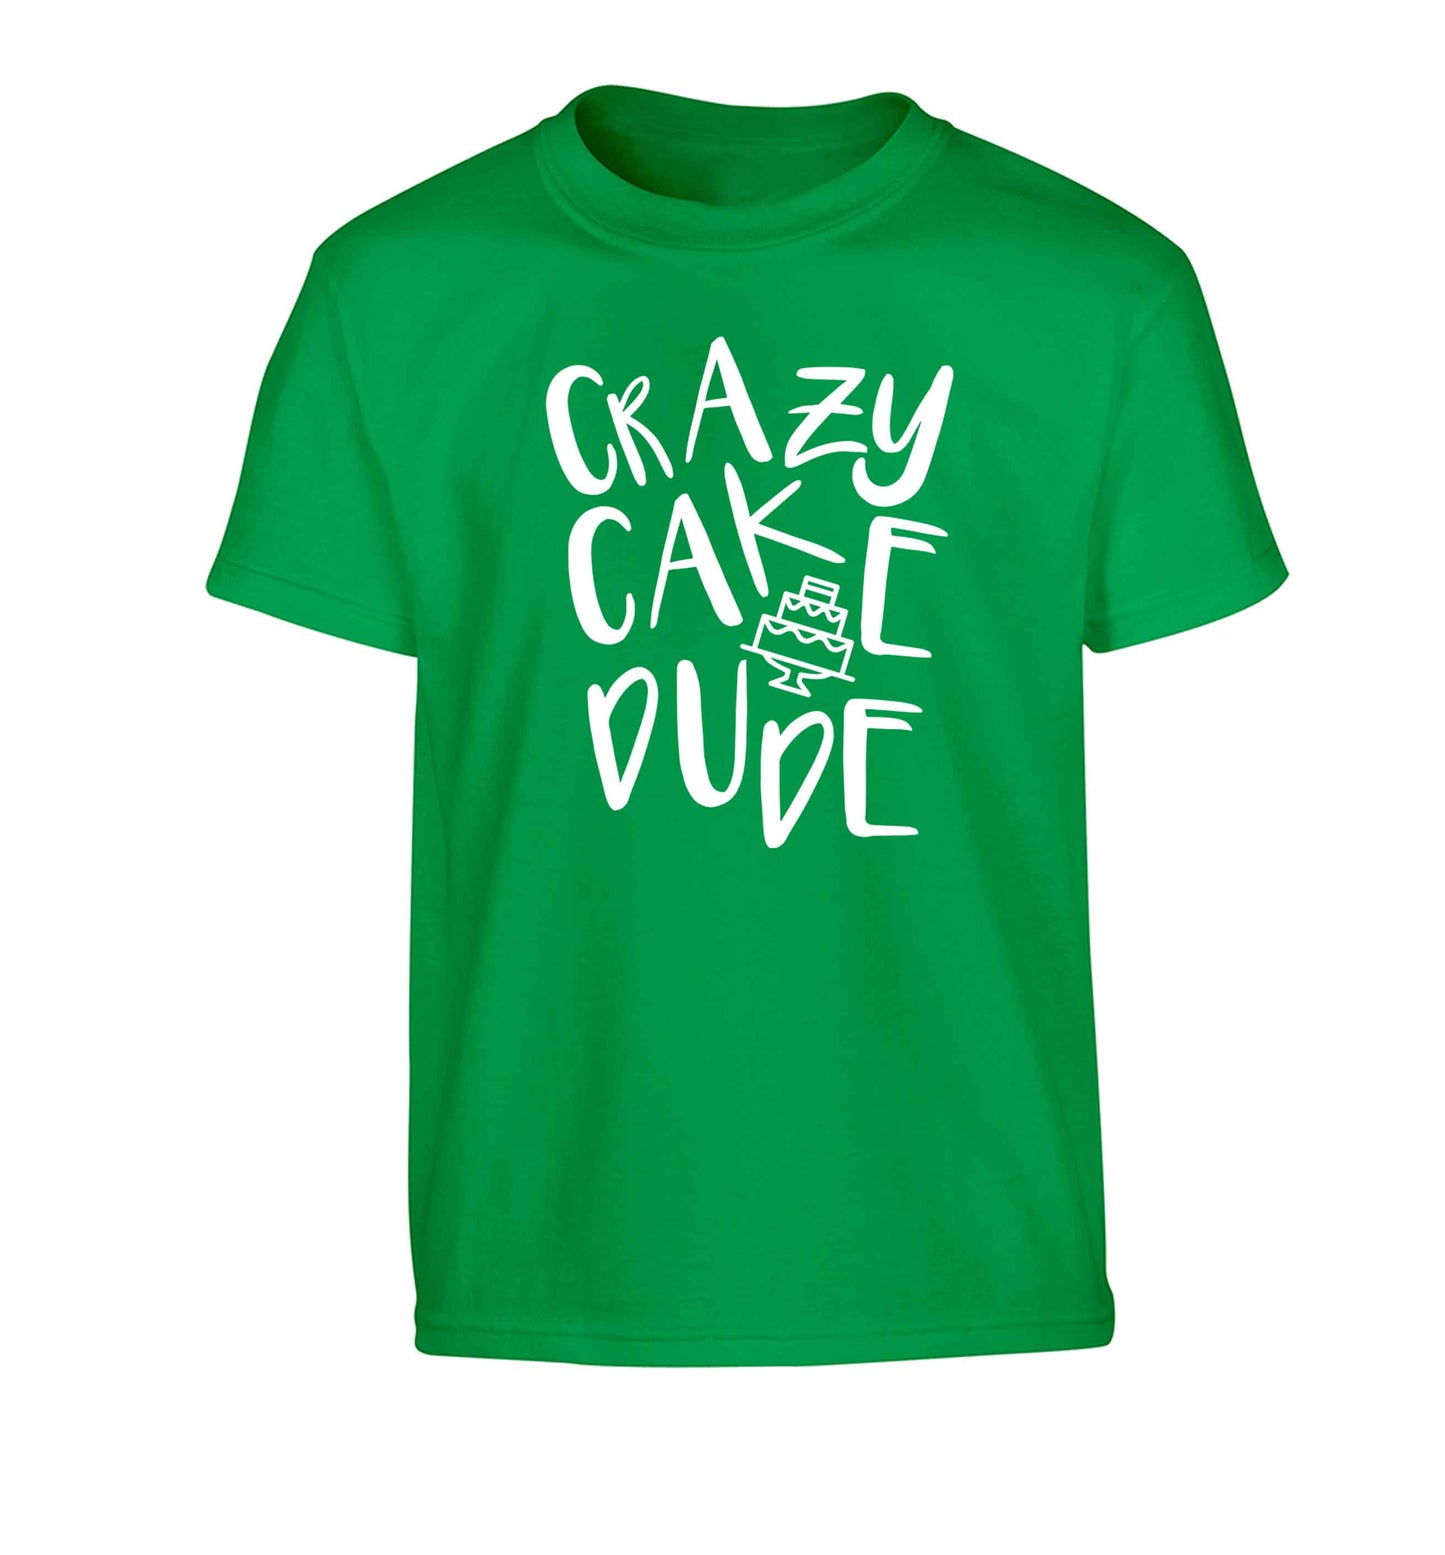 Crazy cake dude Children's green Tshirt 12-13 Years